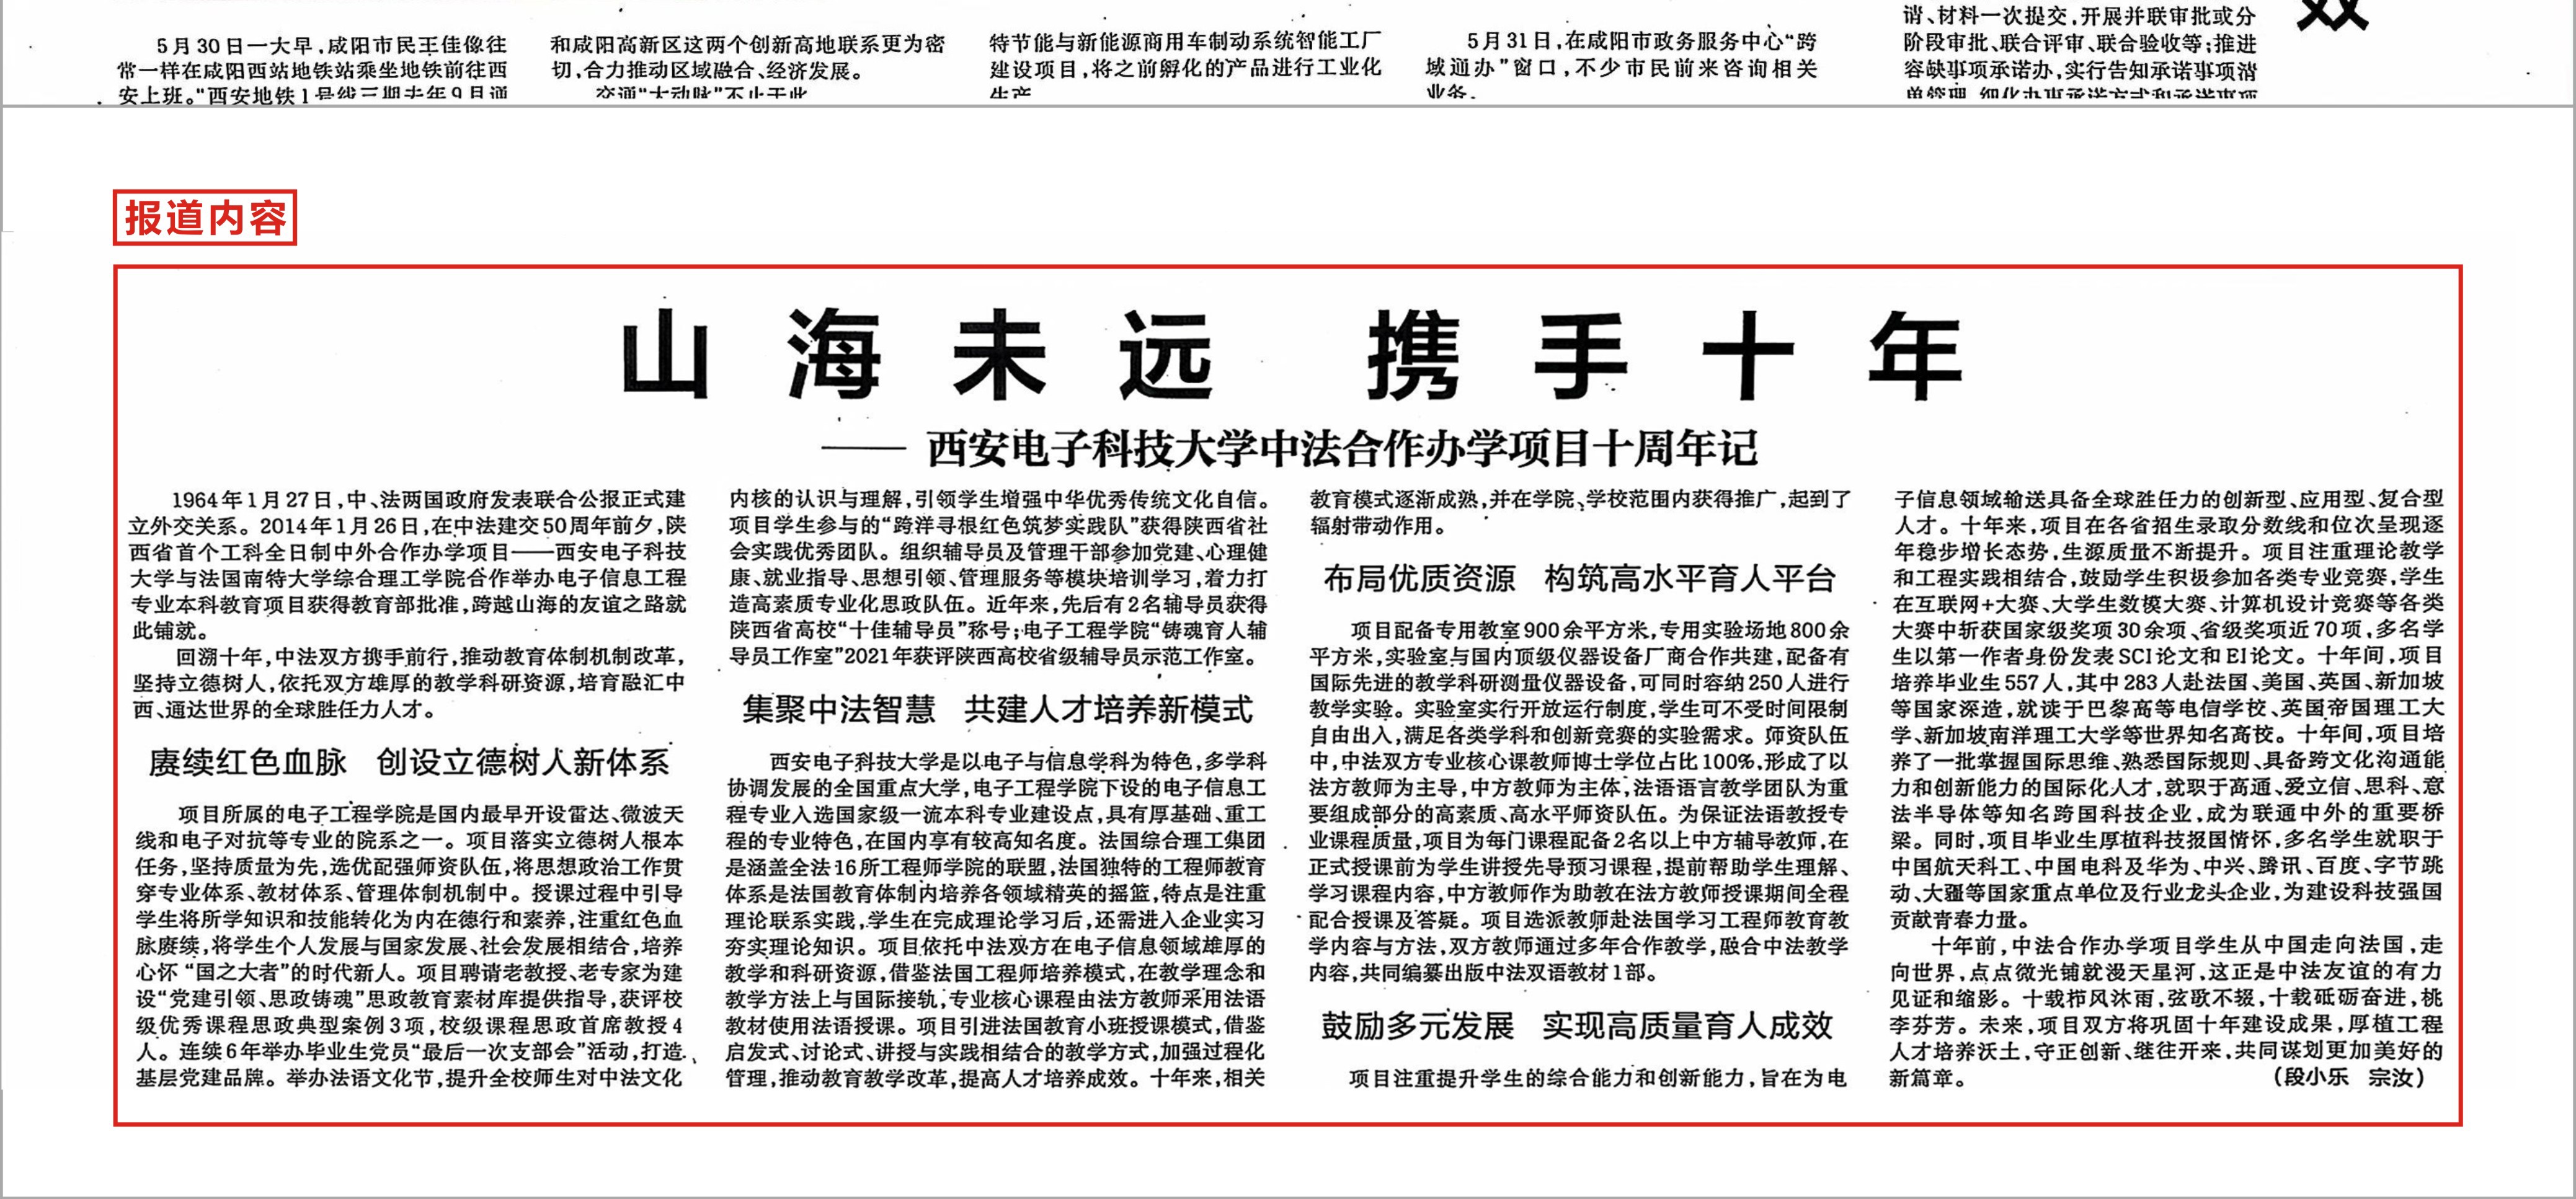 《陕西日报》报道天博官网中法合作办学项目